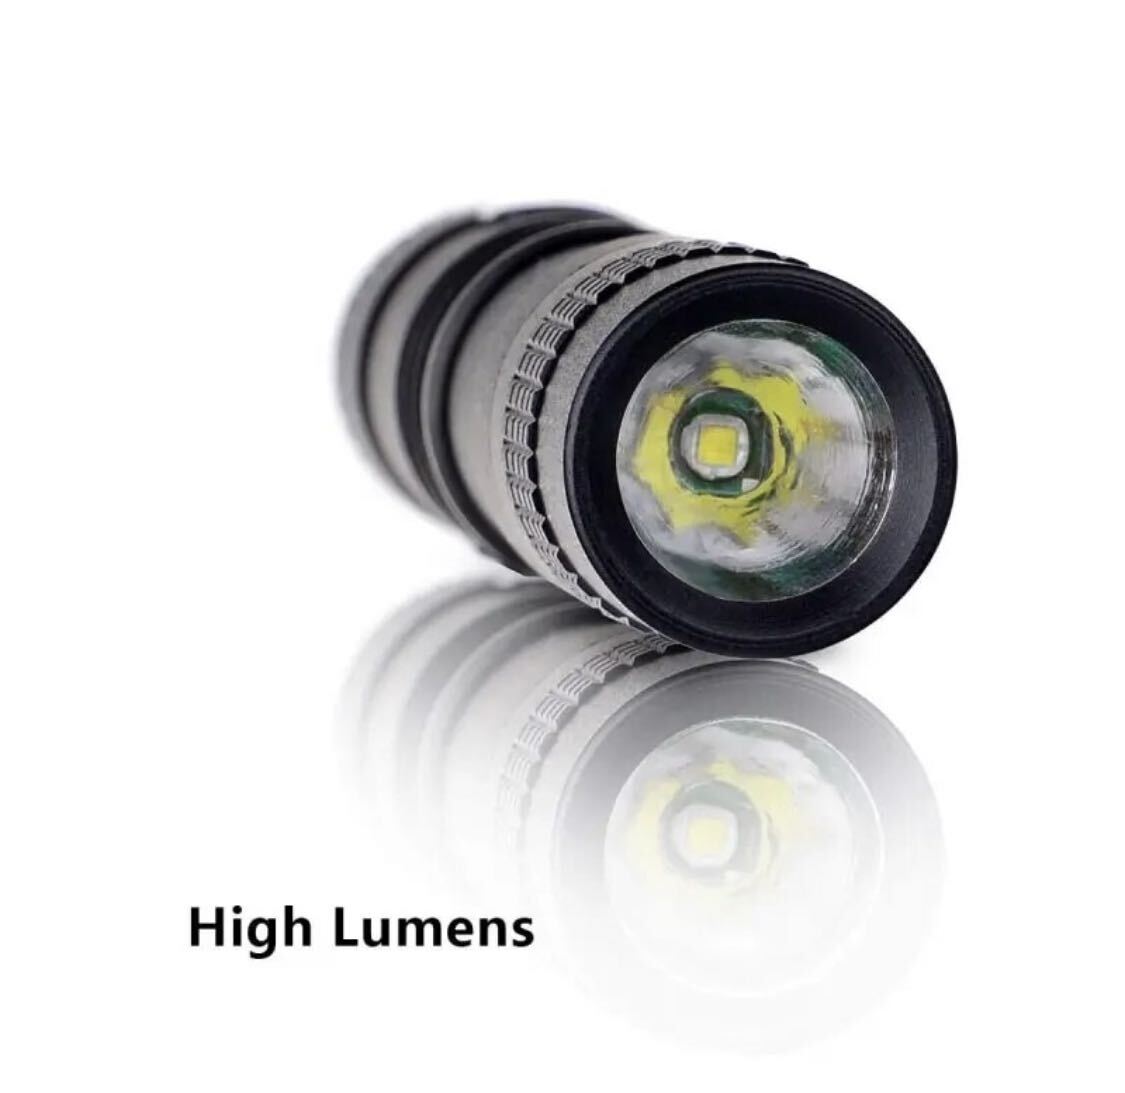 【耐衝撃】アルミニウム製 超小型ペンライト型LED照明 最軽量19g 懐中電灯 強力 ハンディライト 防災 超小型ペンライト型LED照明